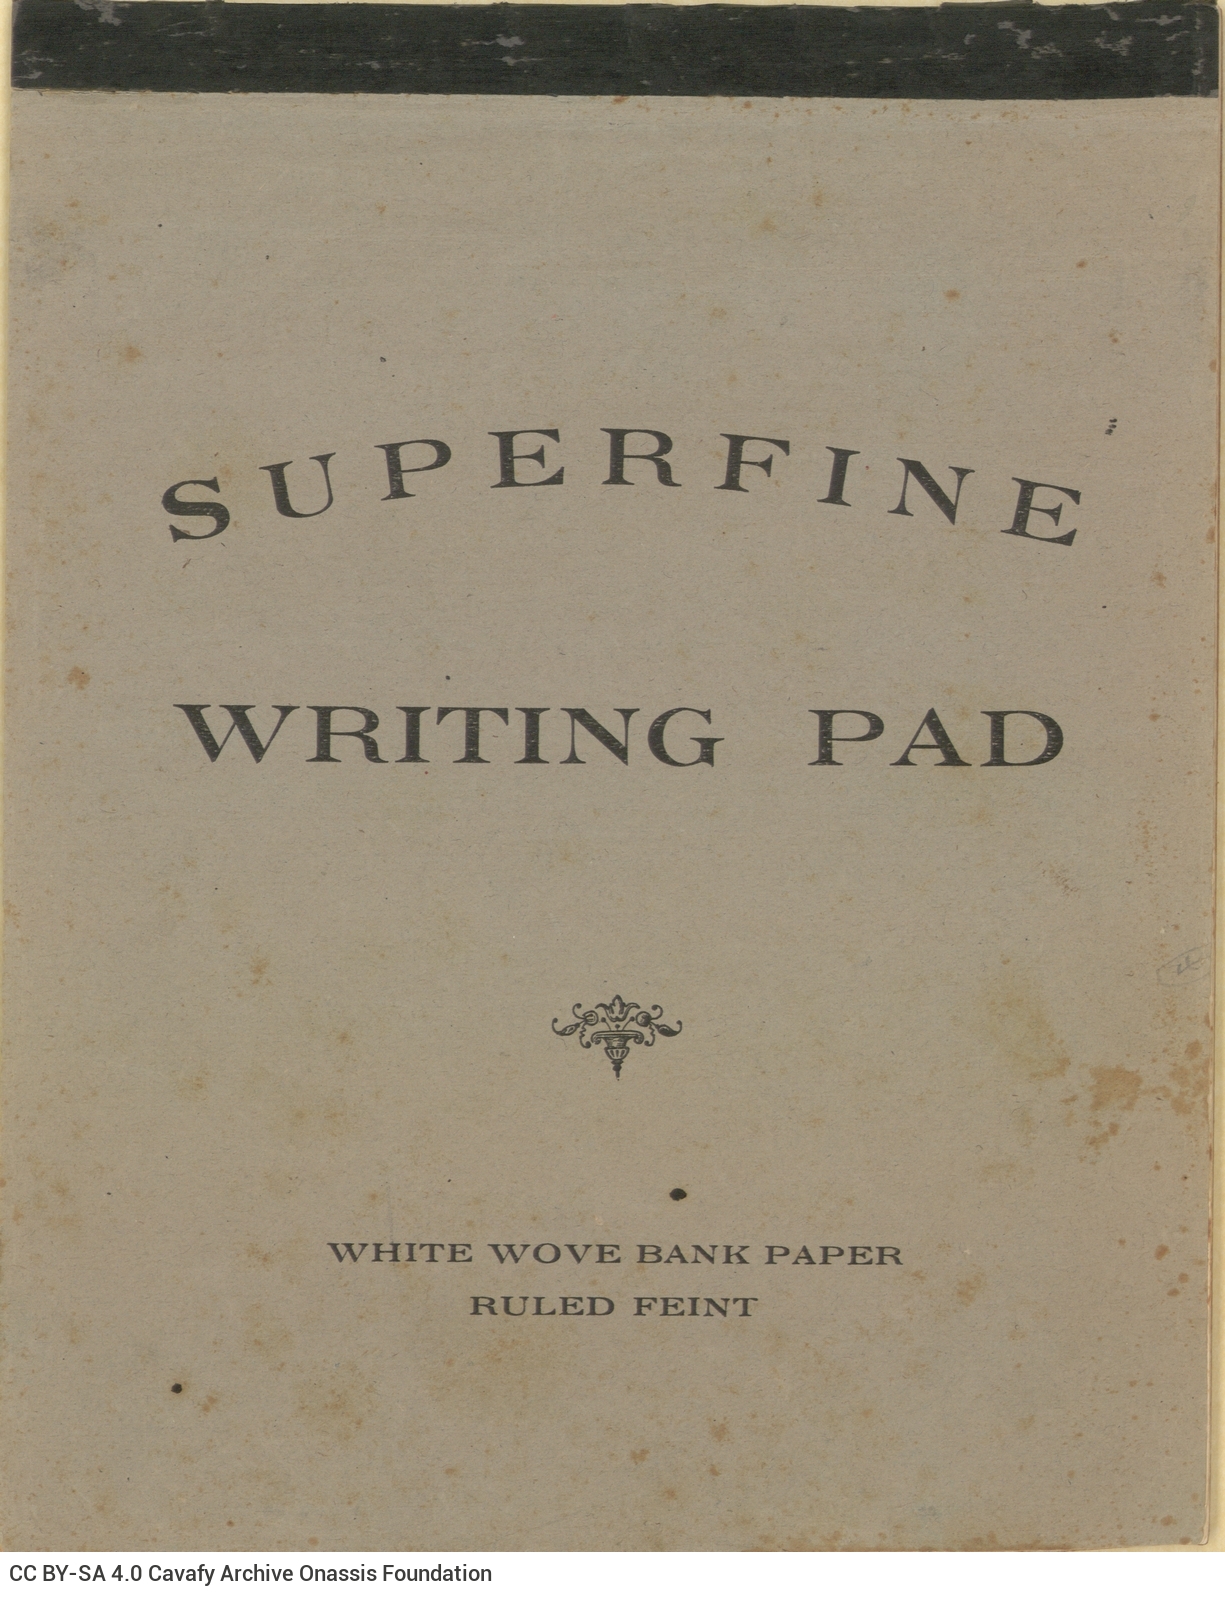 Μπλοκ αλληλογραφίας Superfine Writing Pad γεμάτο με χειρόγραφα σημειώματα, �